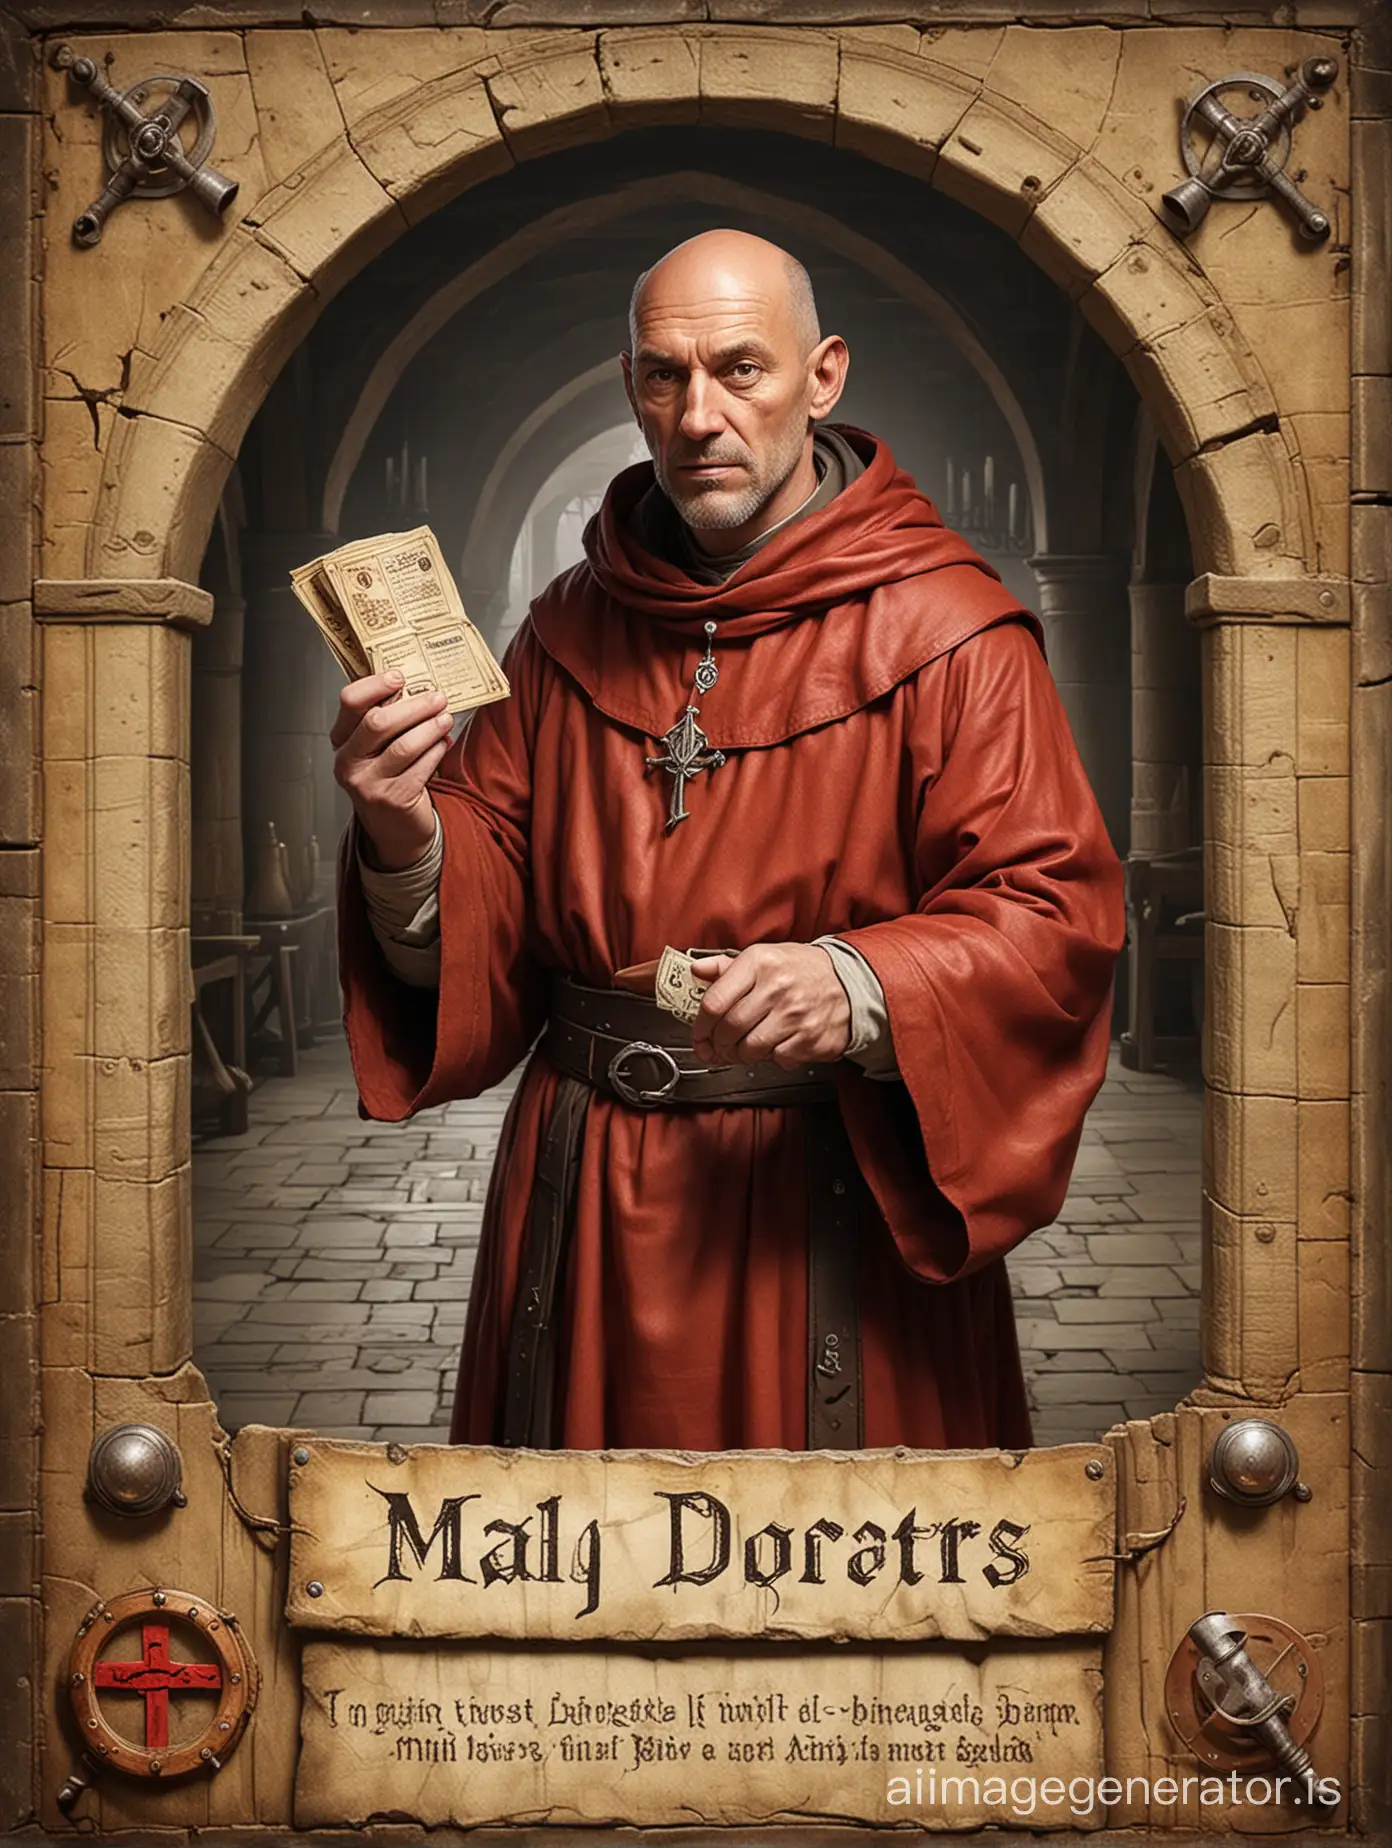 créer une carte de jeu de société représentant un prêtre moine inquisiteur au moyen âge, dans un monastère, âgé de 50 ans , spécialiste de la torture 